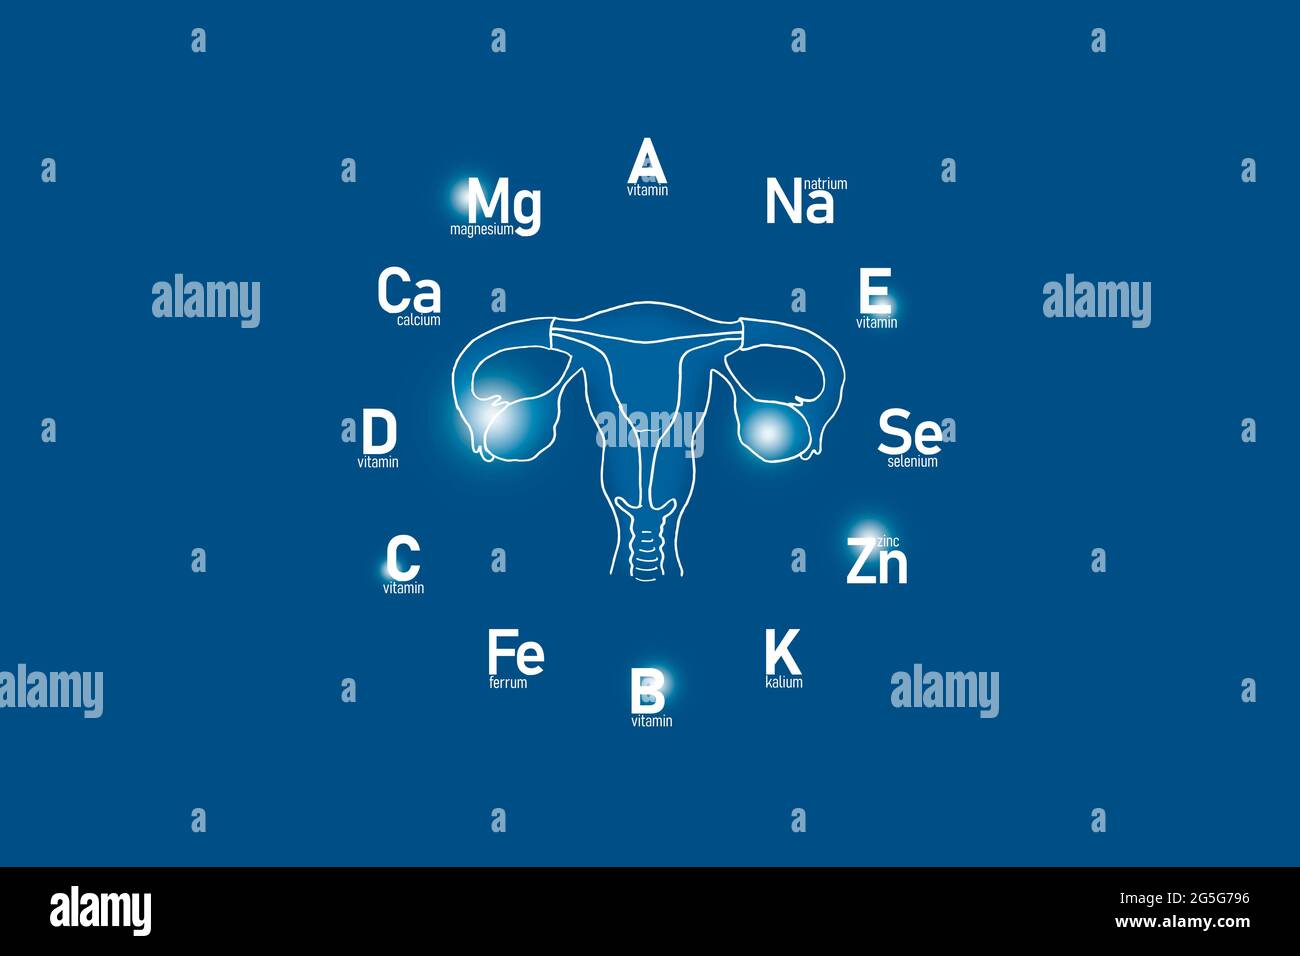 Cadran stylisé avec vitamines et microéléments essentiels pour la santé humaine, utérus dessiné à la main, fond bleu foncé. Banque D'Images